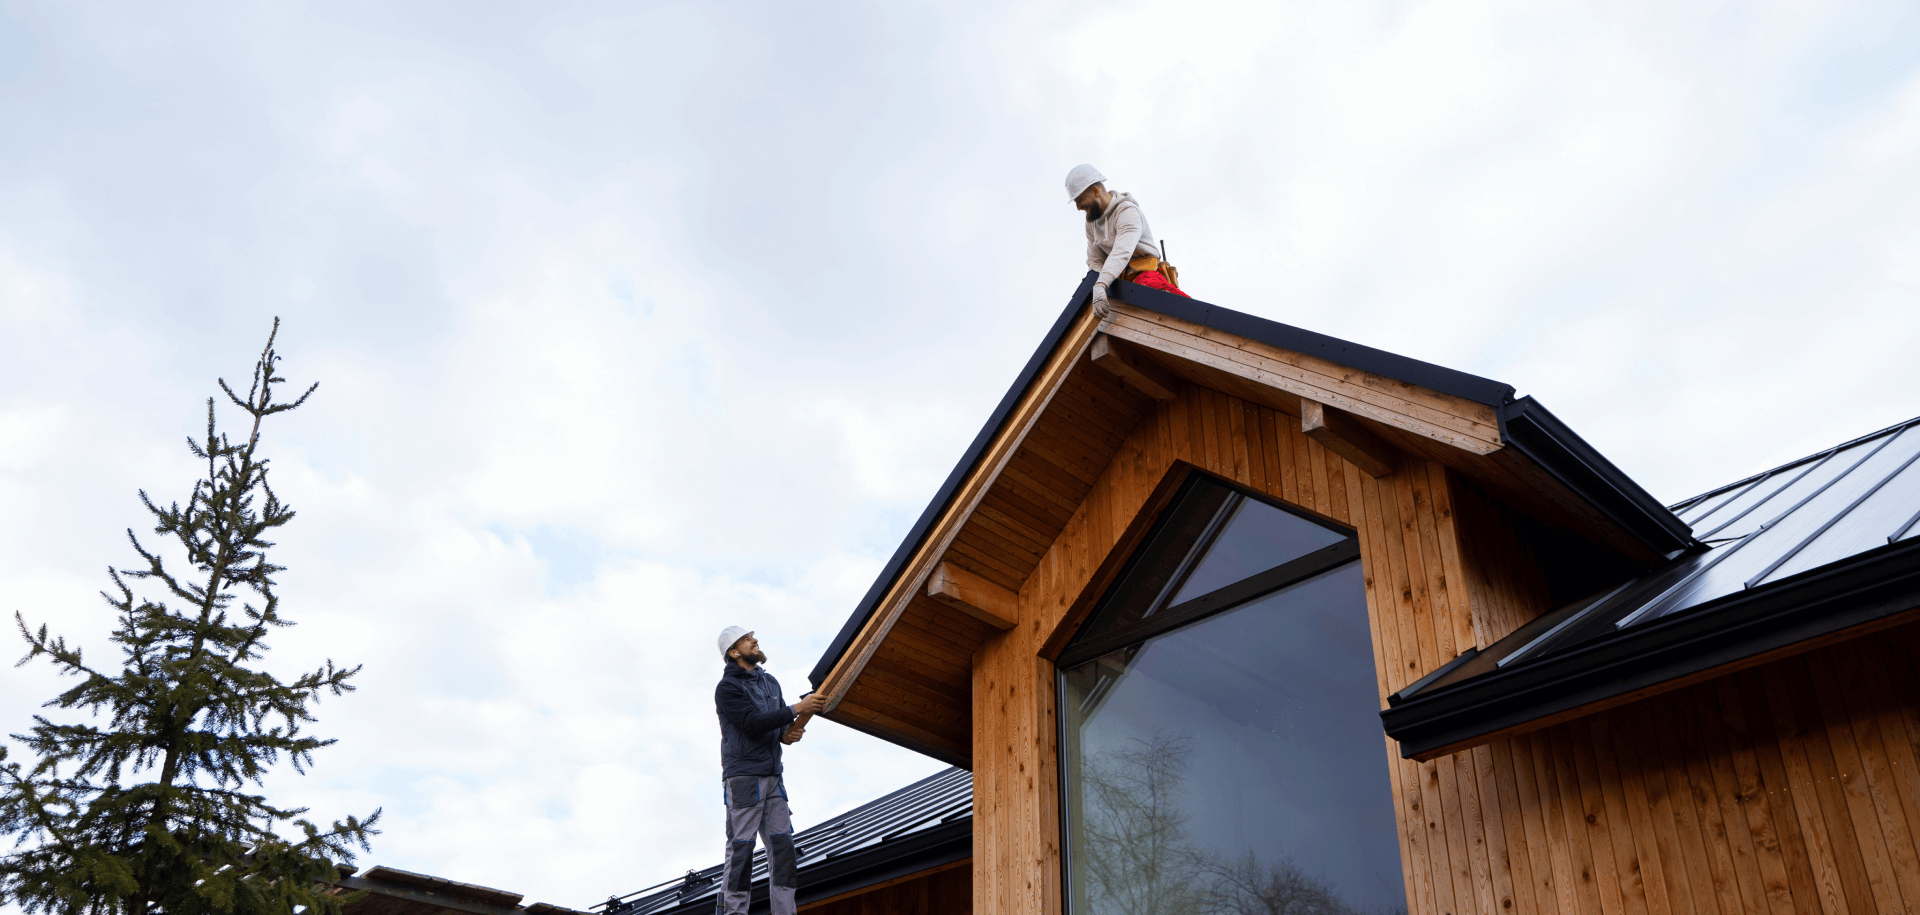 Dachkonstruktion, Blecheindeckung und allgemeine Konstruktion